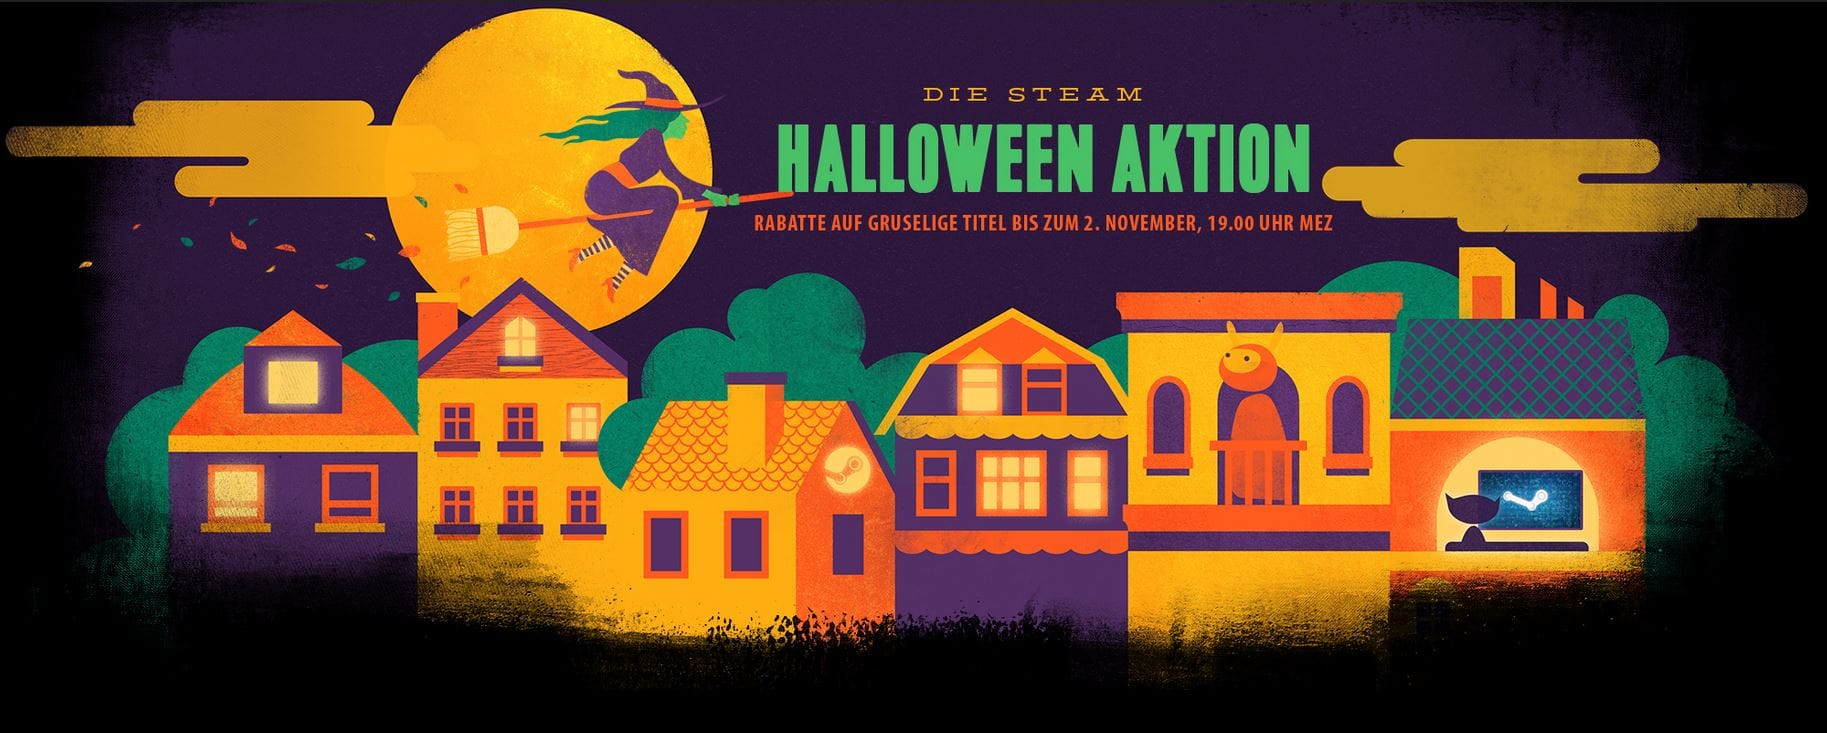 Steam-Halloween-Sale-2015 - Game 2 Gastbeitrag